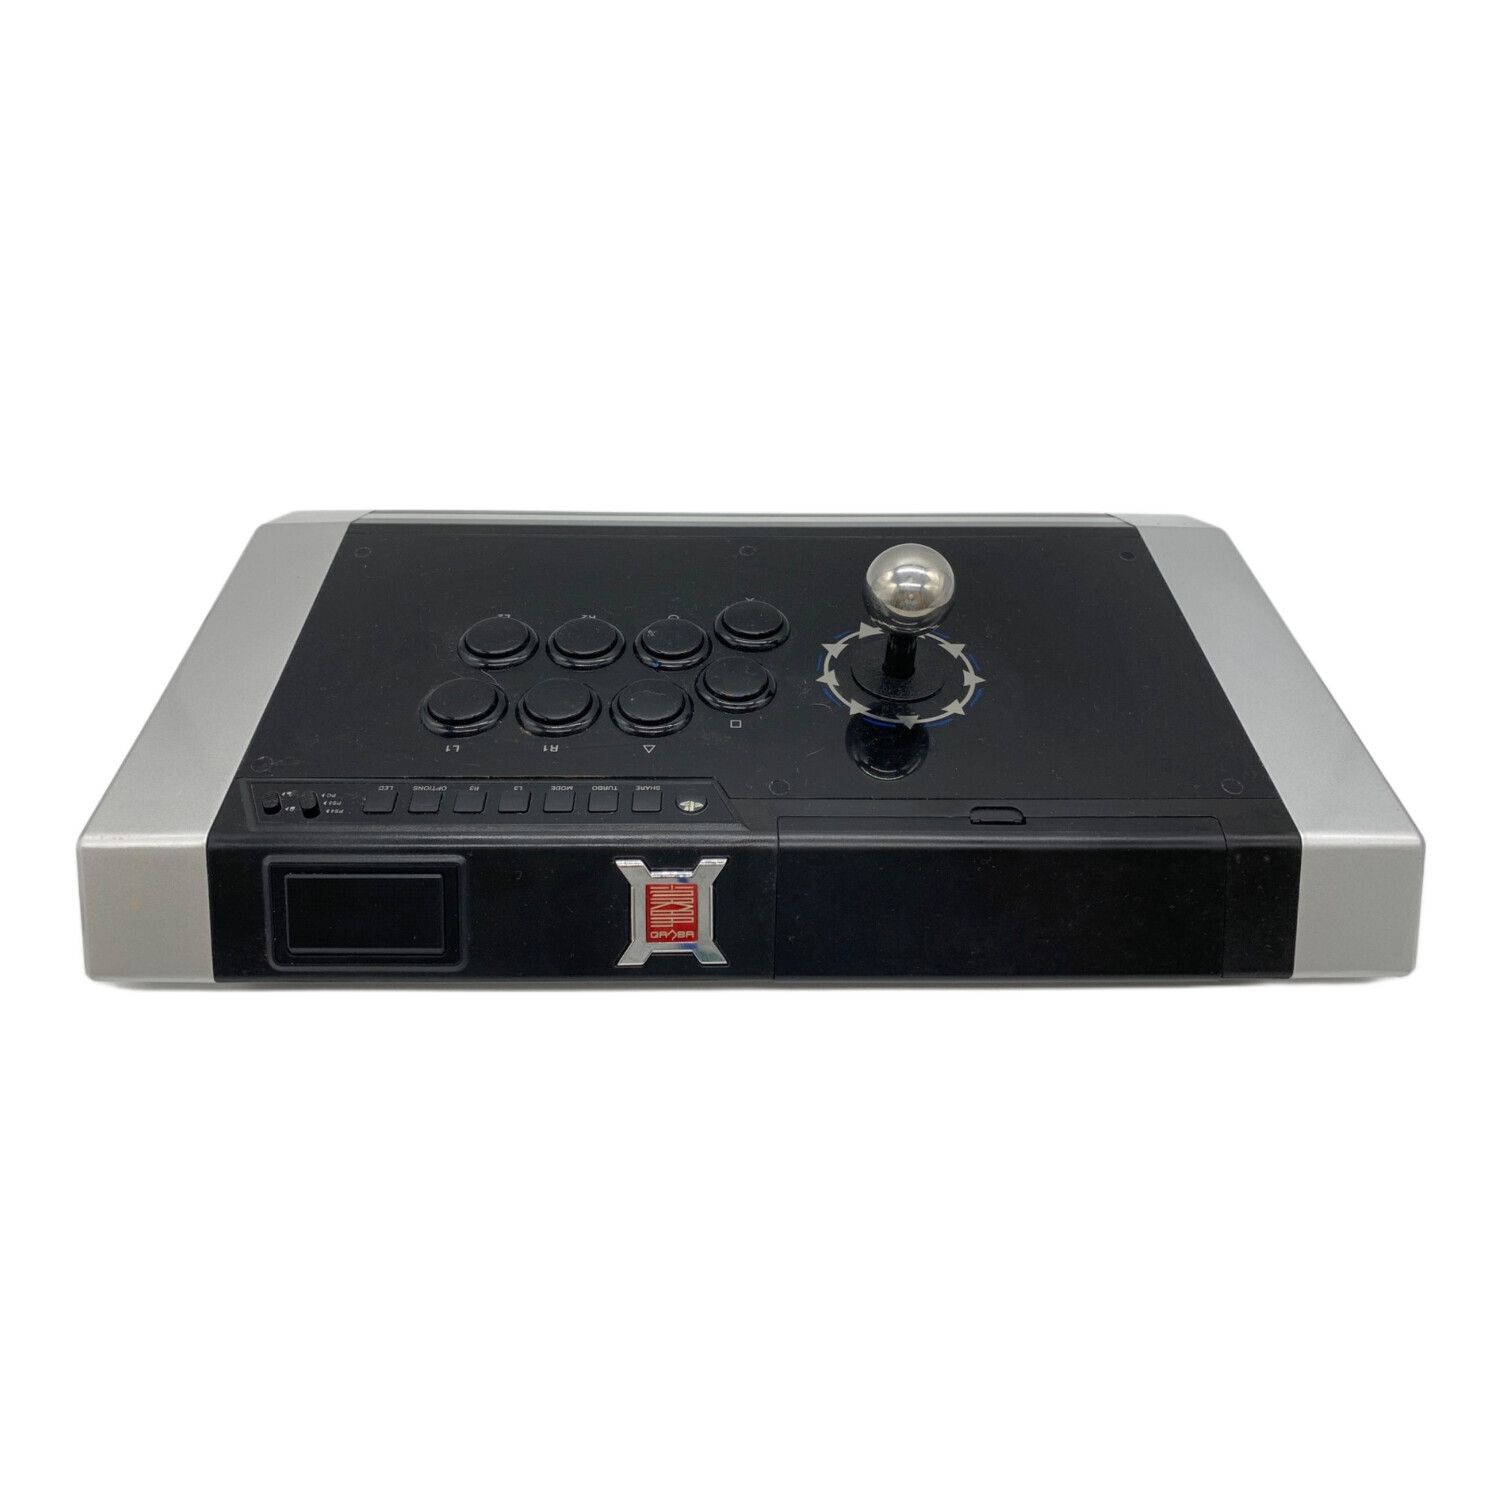 QANBA OBSIDIAN アーケードコントローラー Q3-PS4-01 PS3/PS4/PC対応 